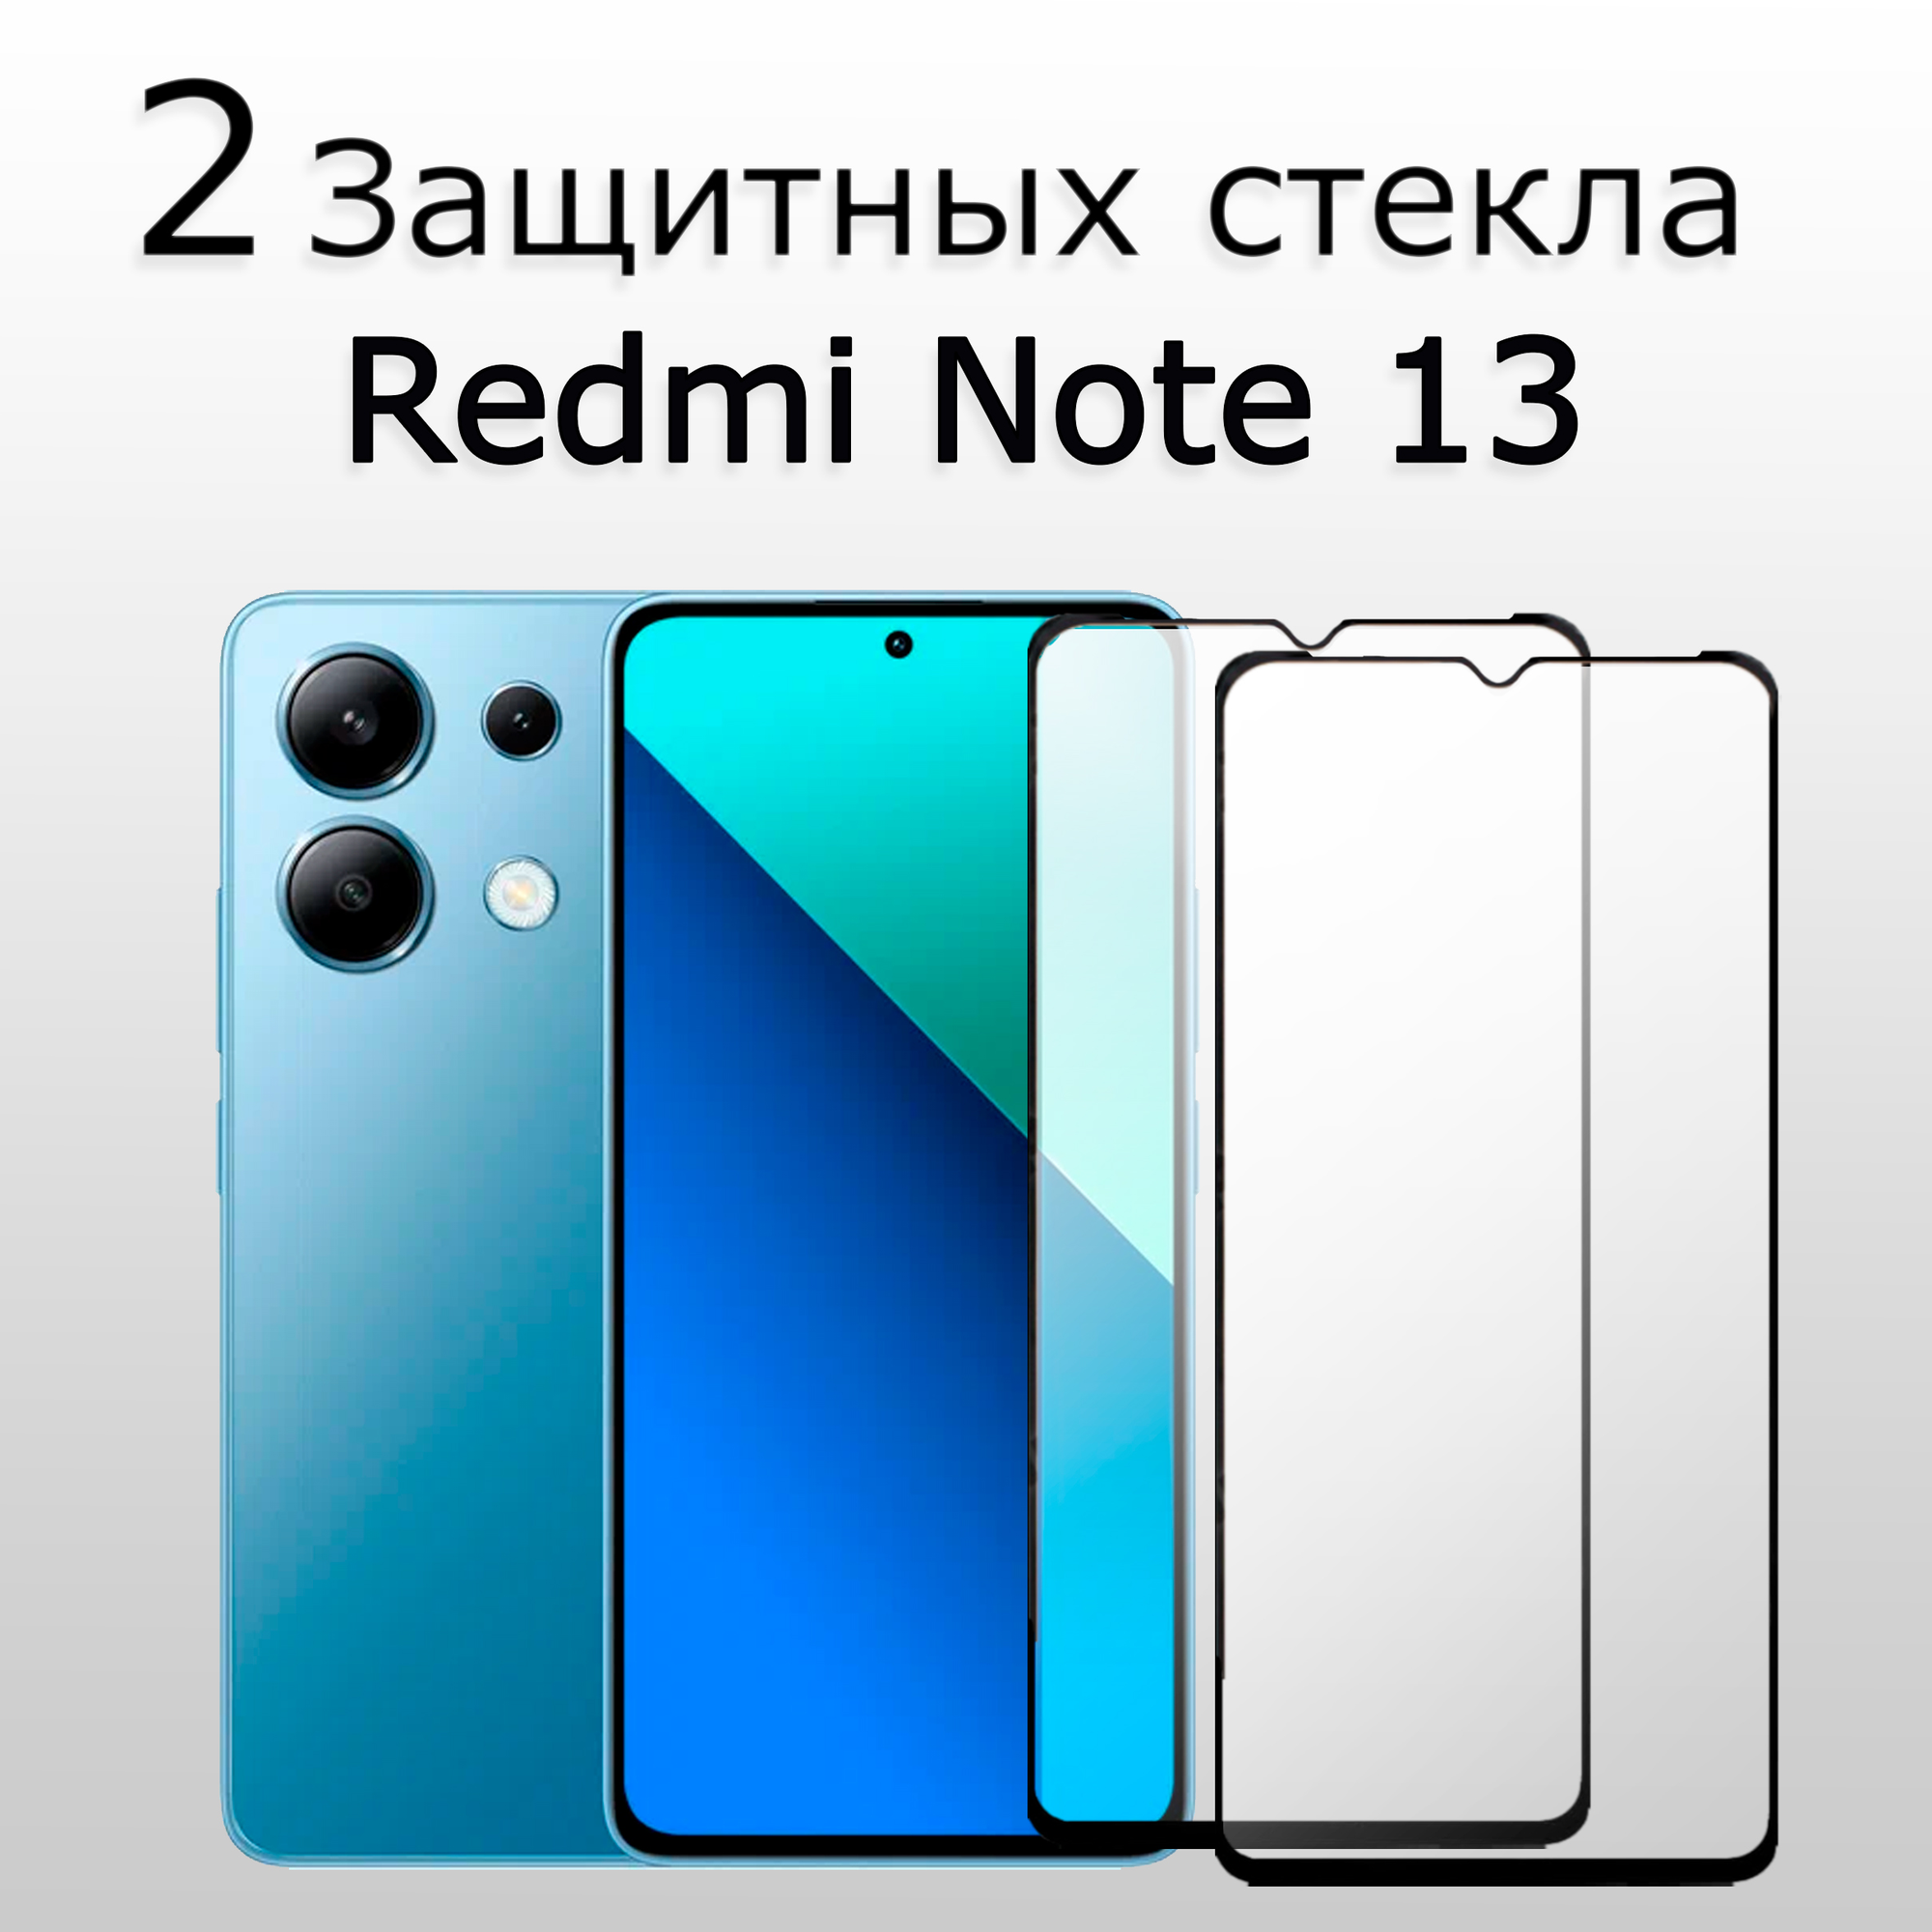 2 Комплекта. Стекло защитное противоударное для Xiaomi Redmi Note 13